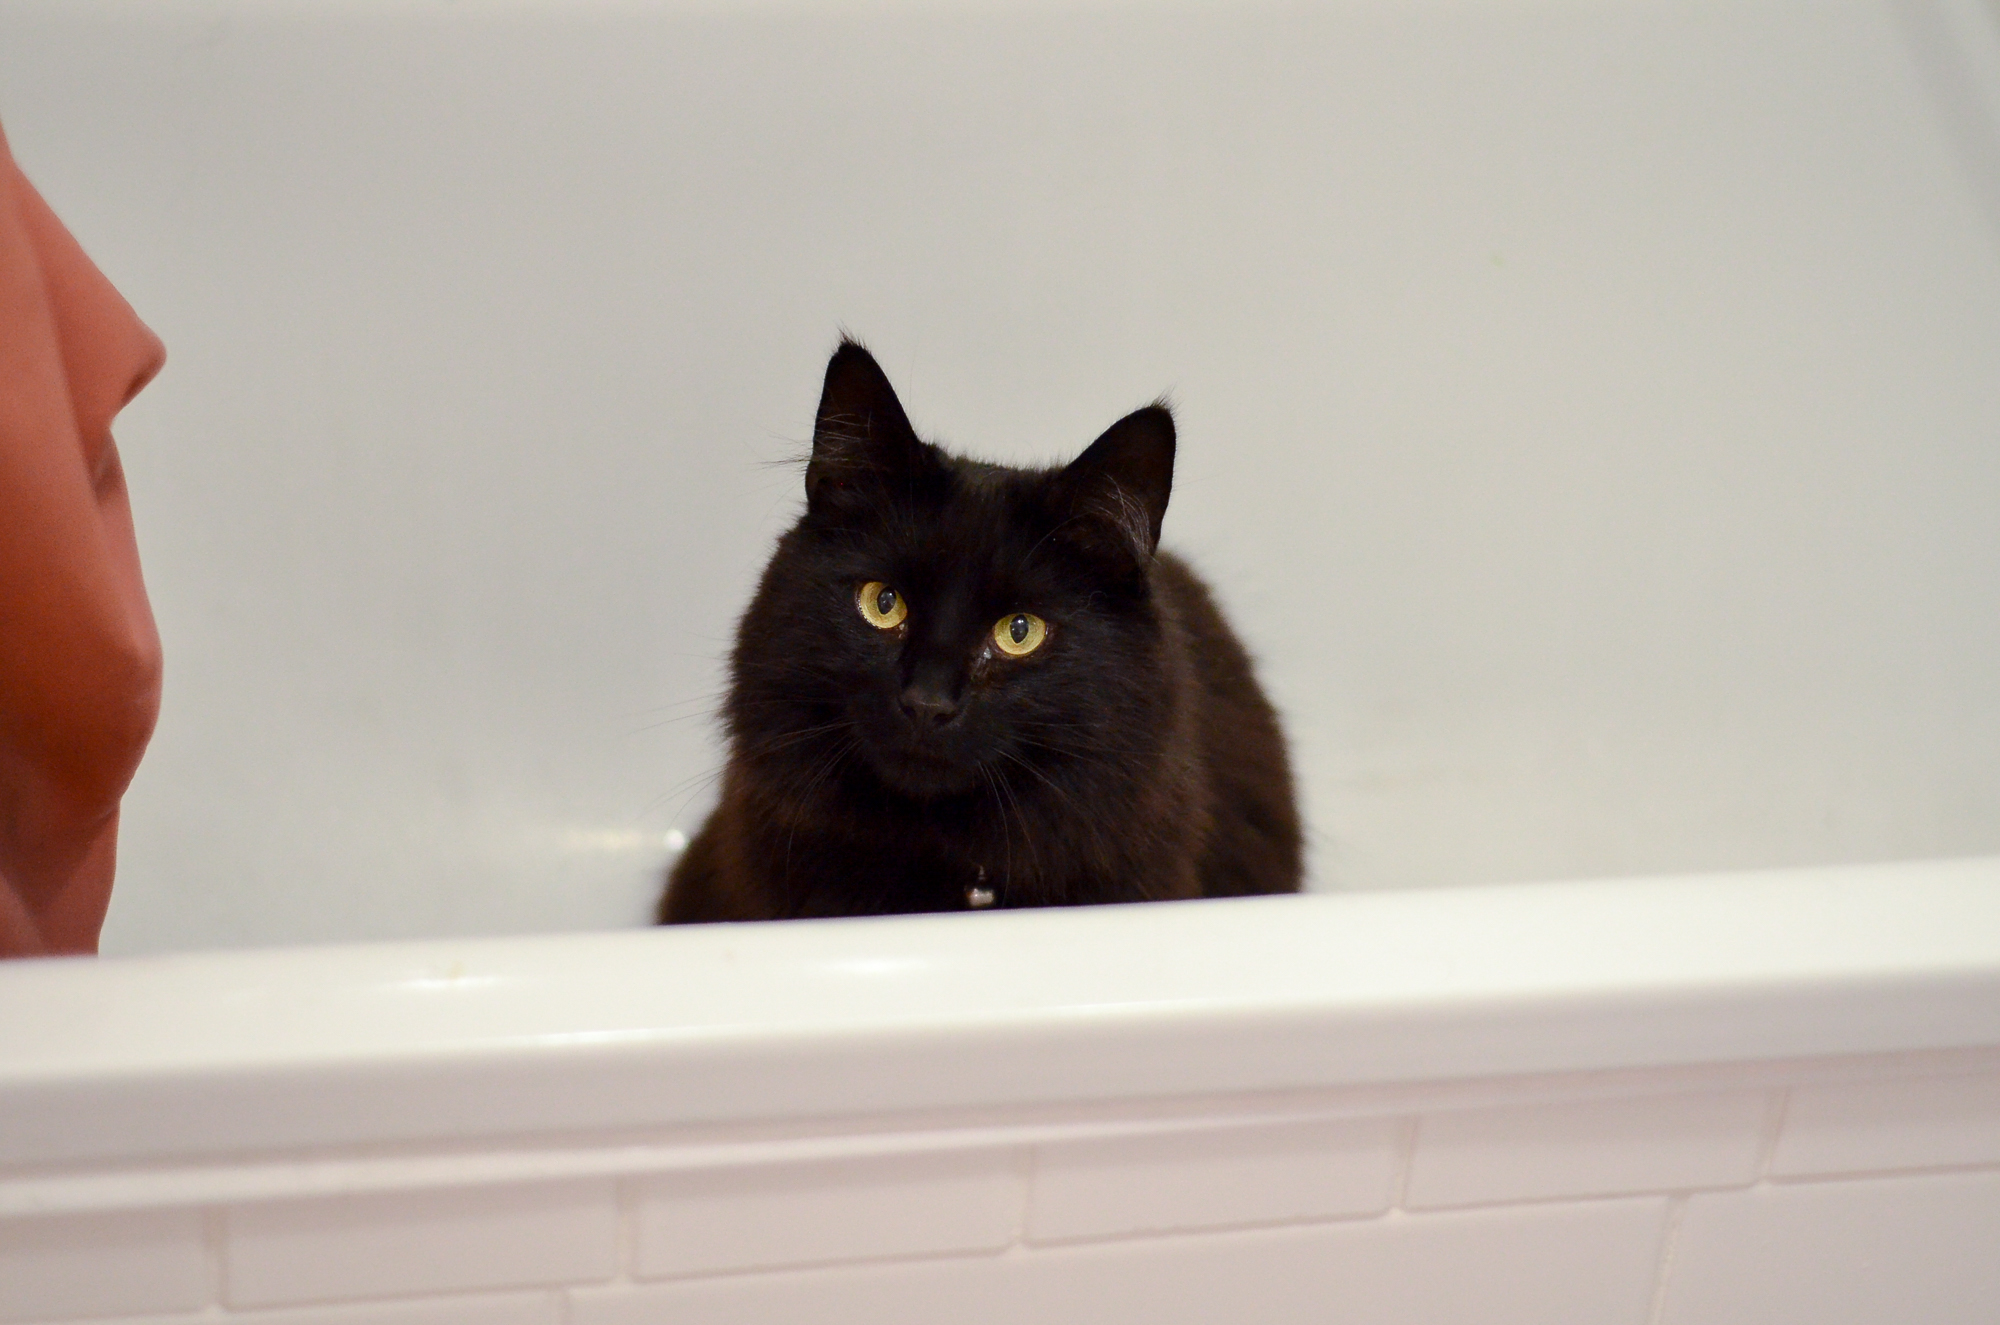 Margot in the bath